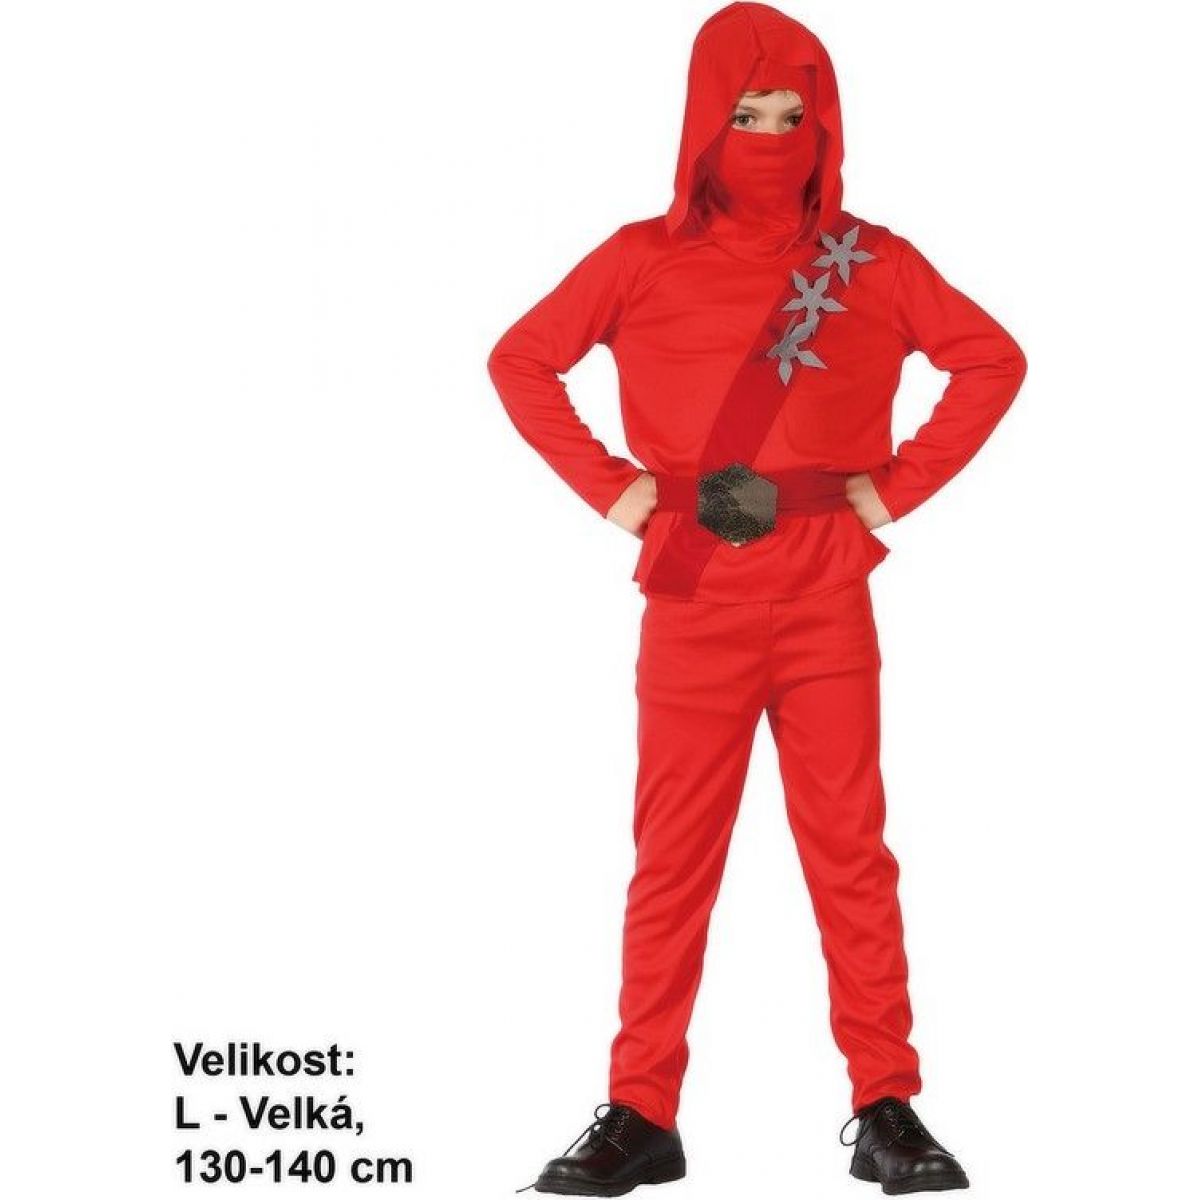 Made Dětský kostým Ninja 130-140 cm